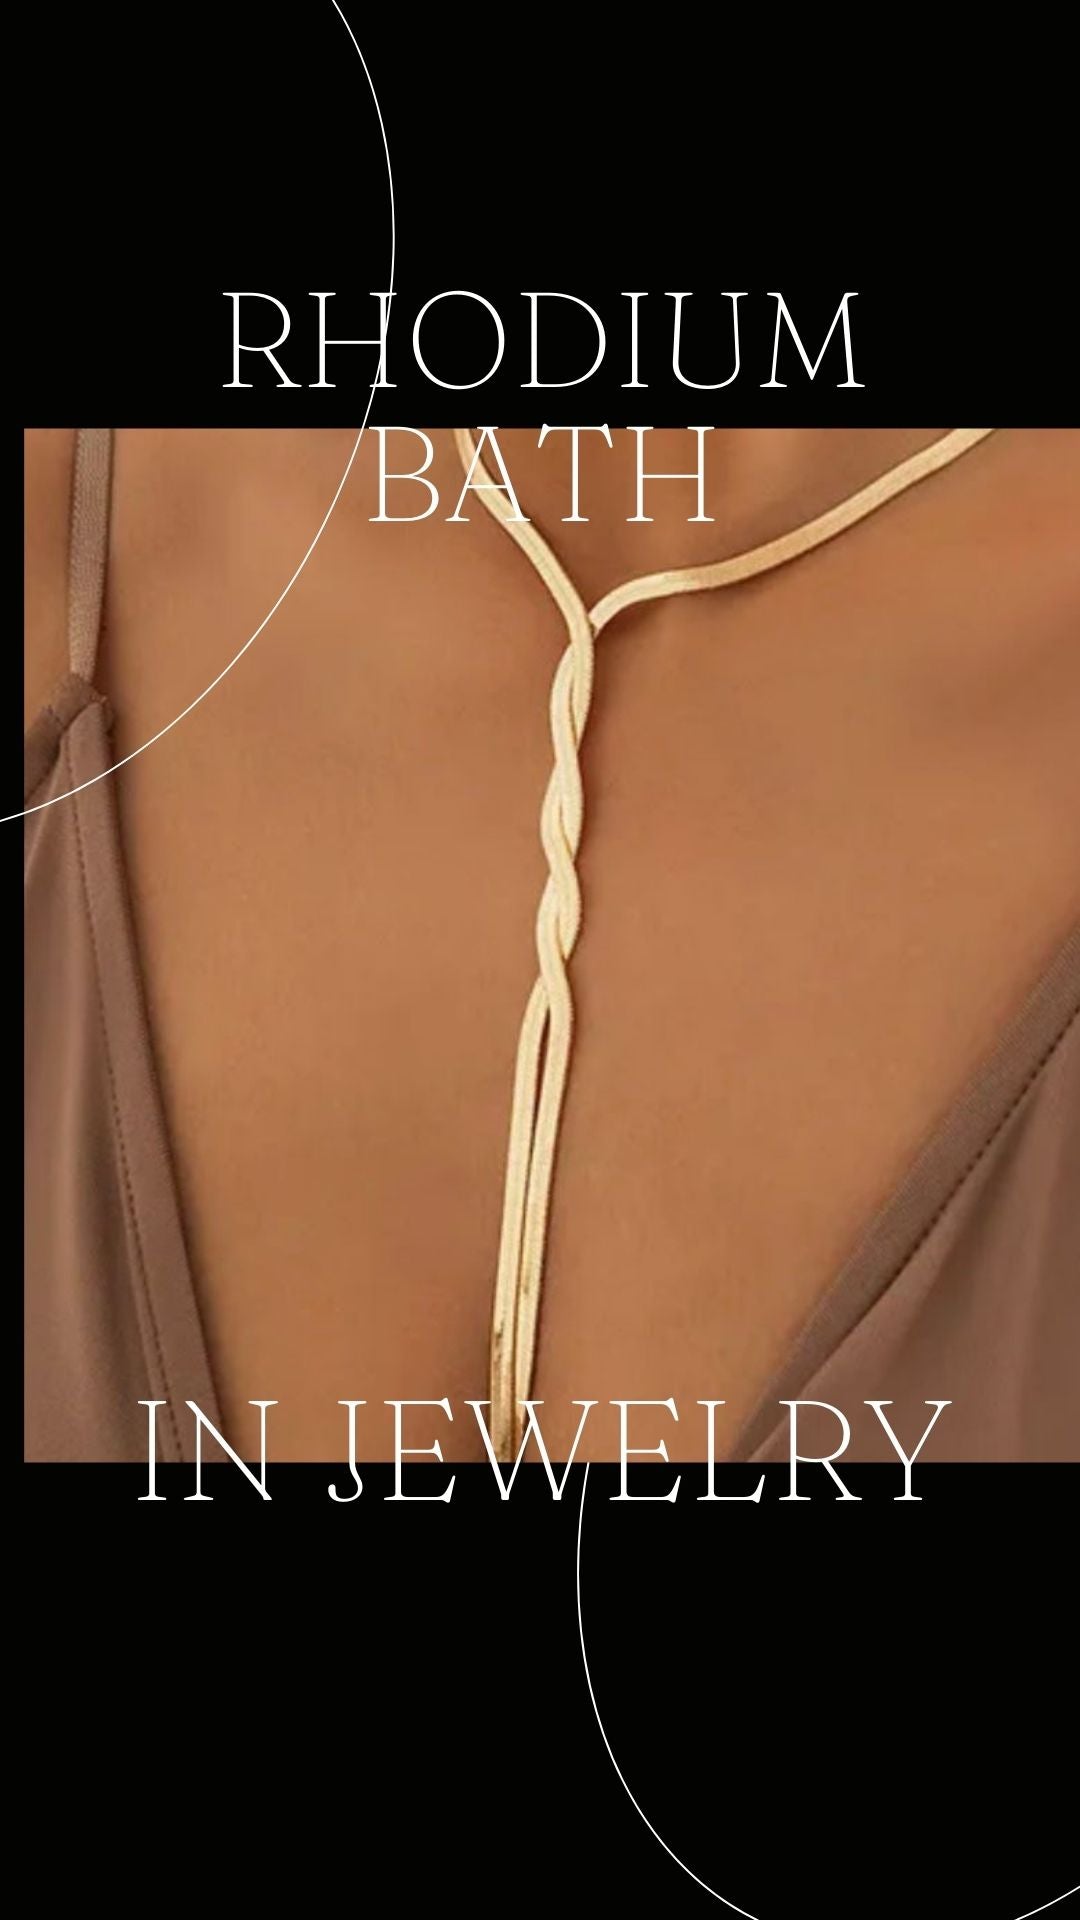 jewelry with rhodium bath